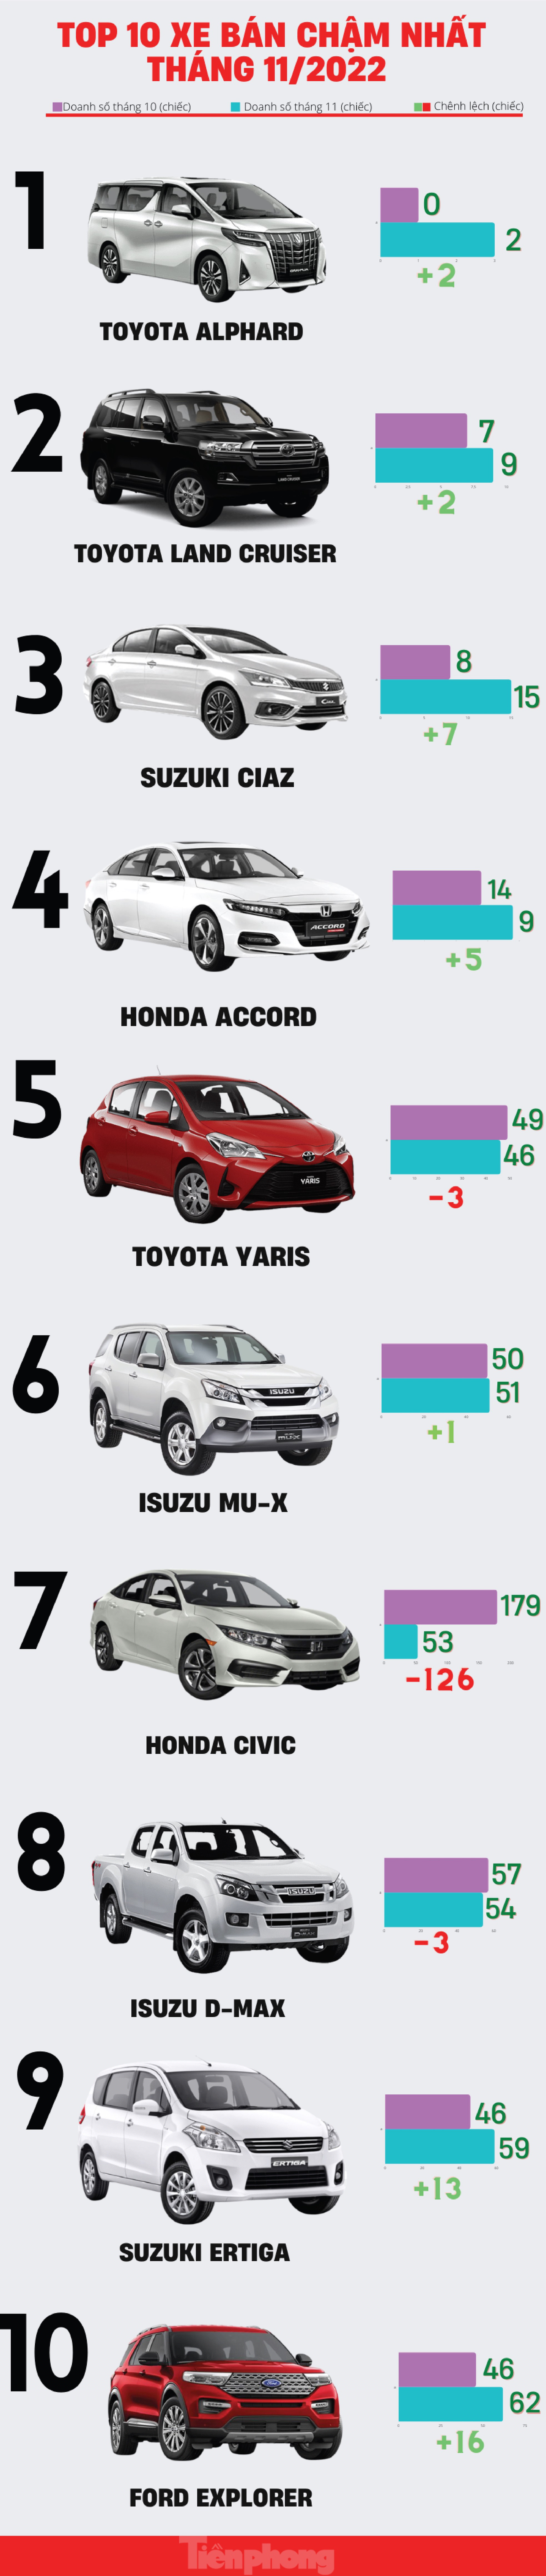 Top 10 ô tô có doanh số thấp nhất tháng 11 tại Việt Nam - Ảnh 1.